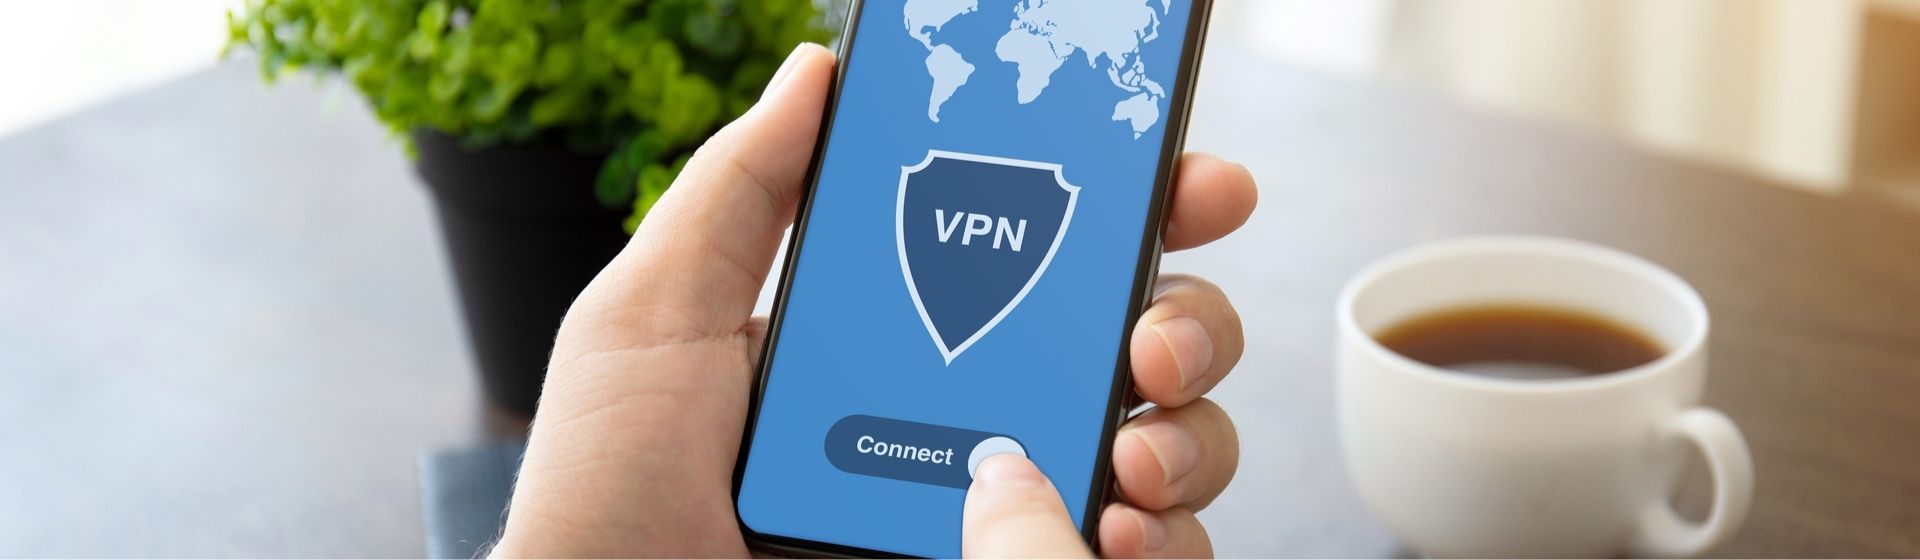 O que é VPN no celular? Entenda as funcionalidades